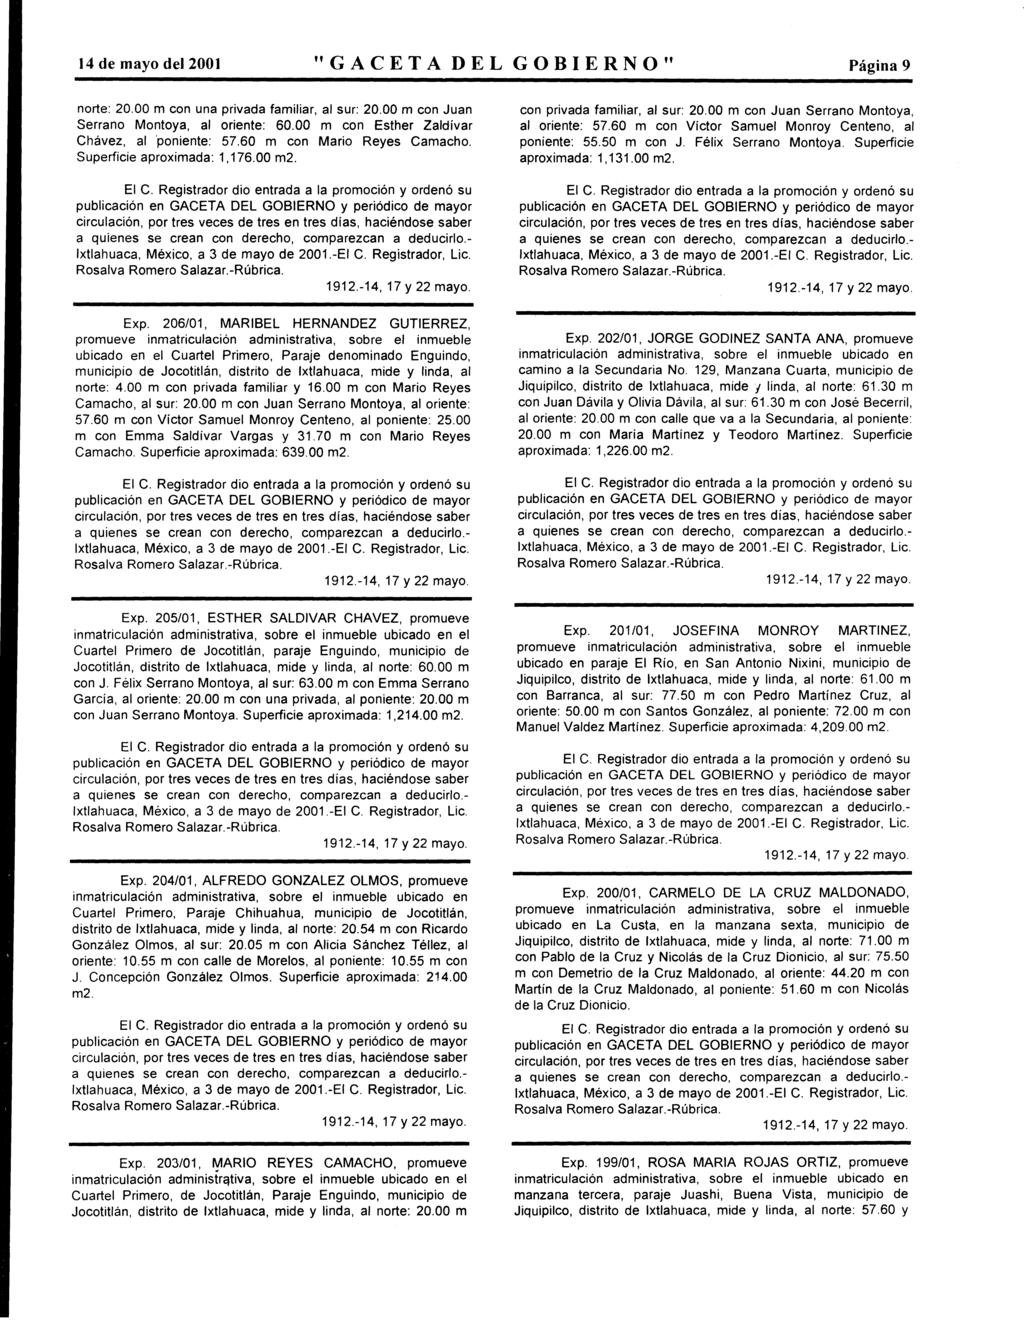 14 de may del 2001 "GACETA DEL GOBIERNO" Página 9 nrte: 20.00 m cn una privada familiar, al sur: 20.00 m cn Juan Serran Mntya, al riente: 60.00 m cn Esther Zaldívar Chávez, al 'pniente: 57.